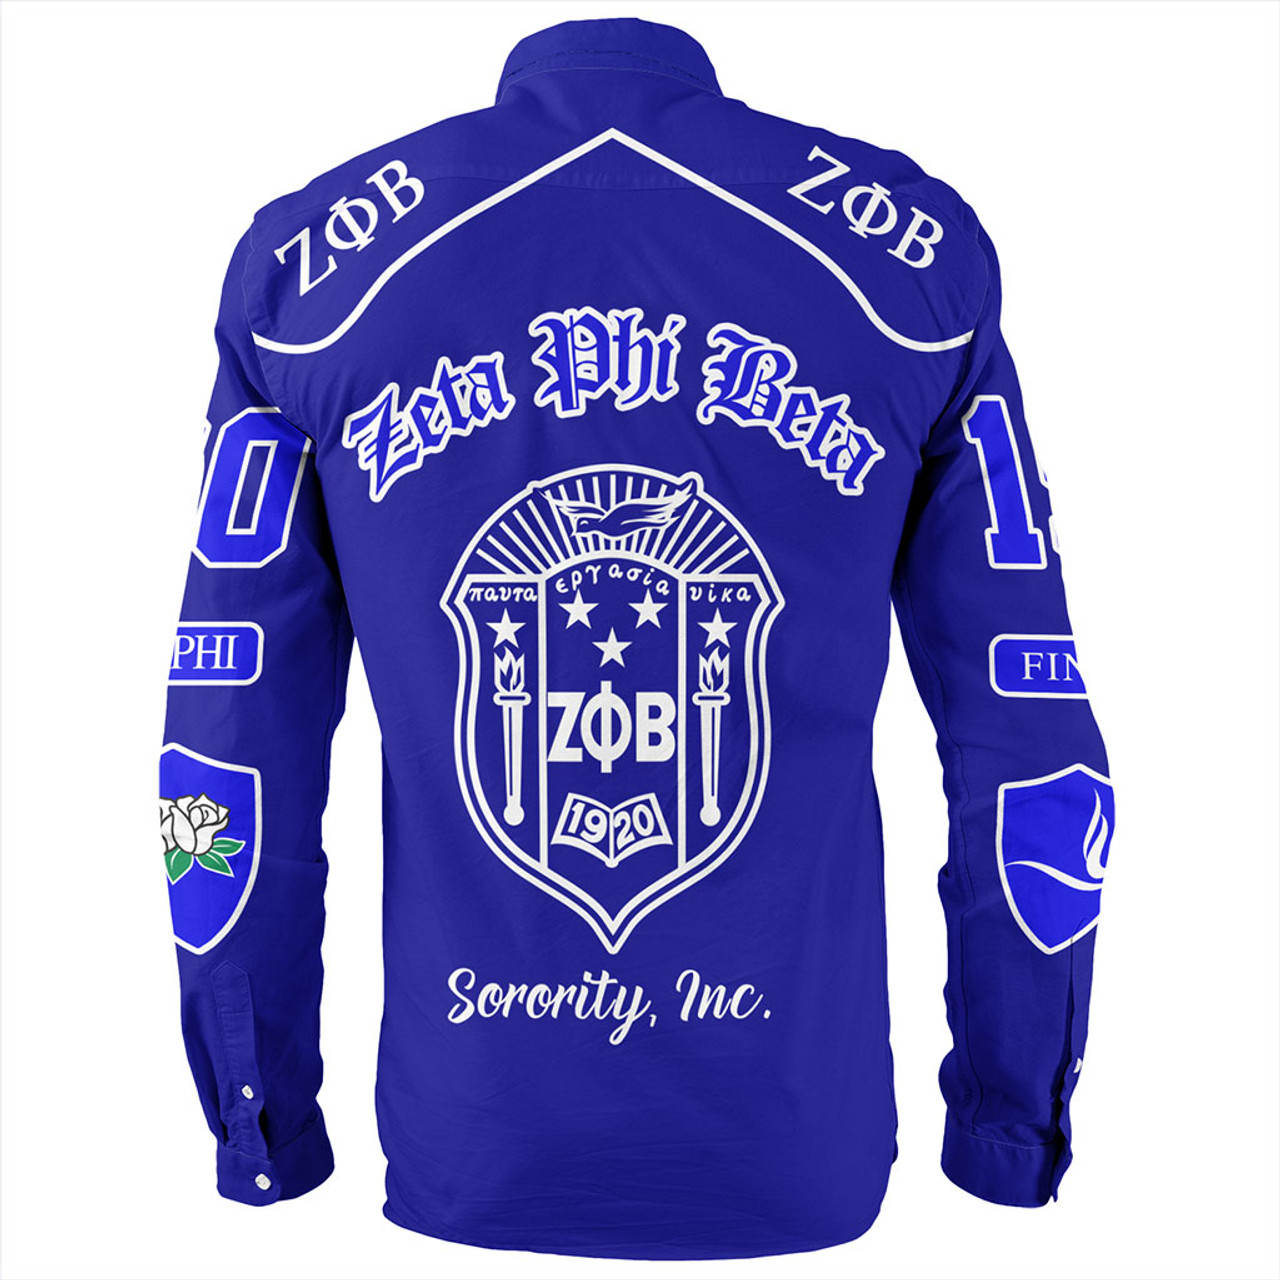 Zeta Phi Beta Long Sleeve Shirt Greek Sorority Style